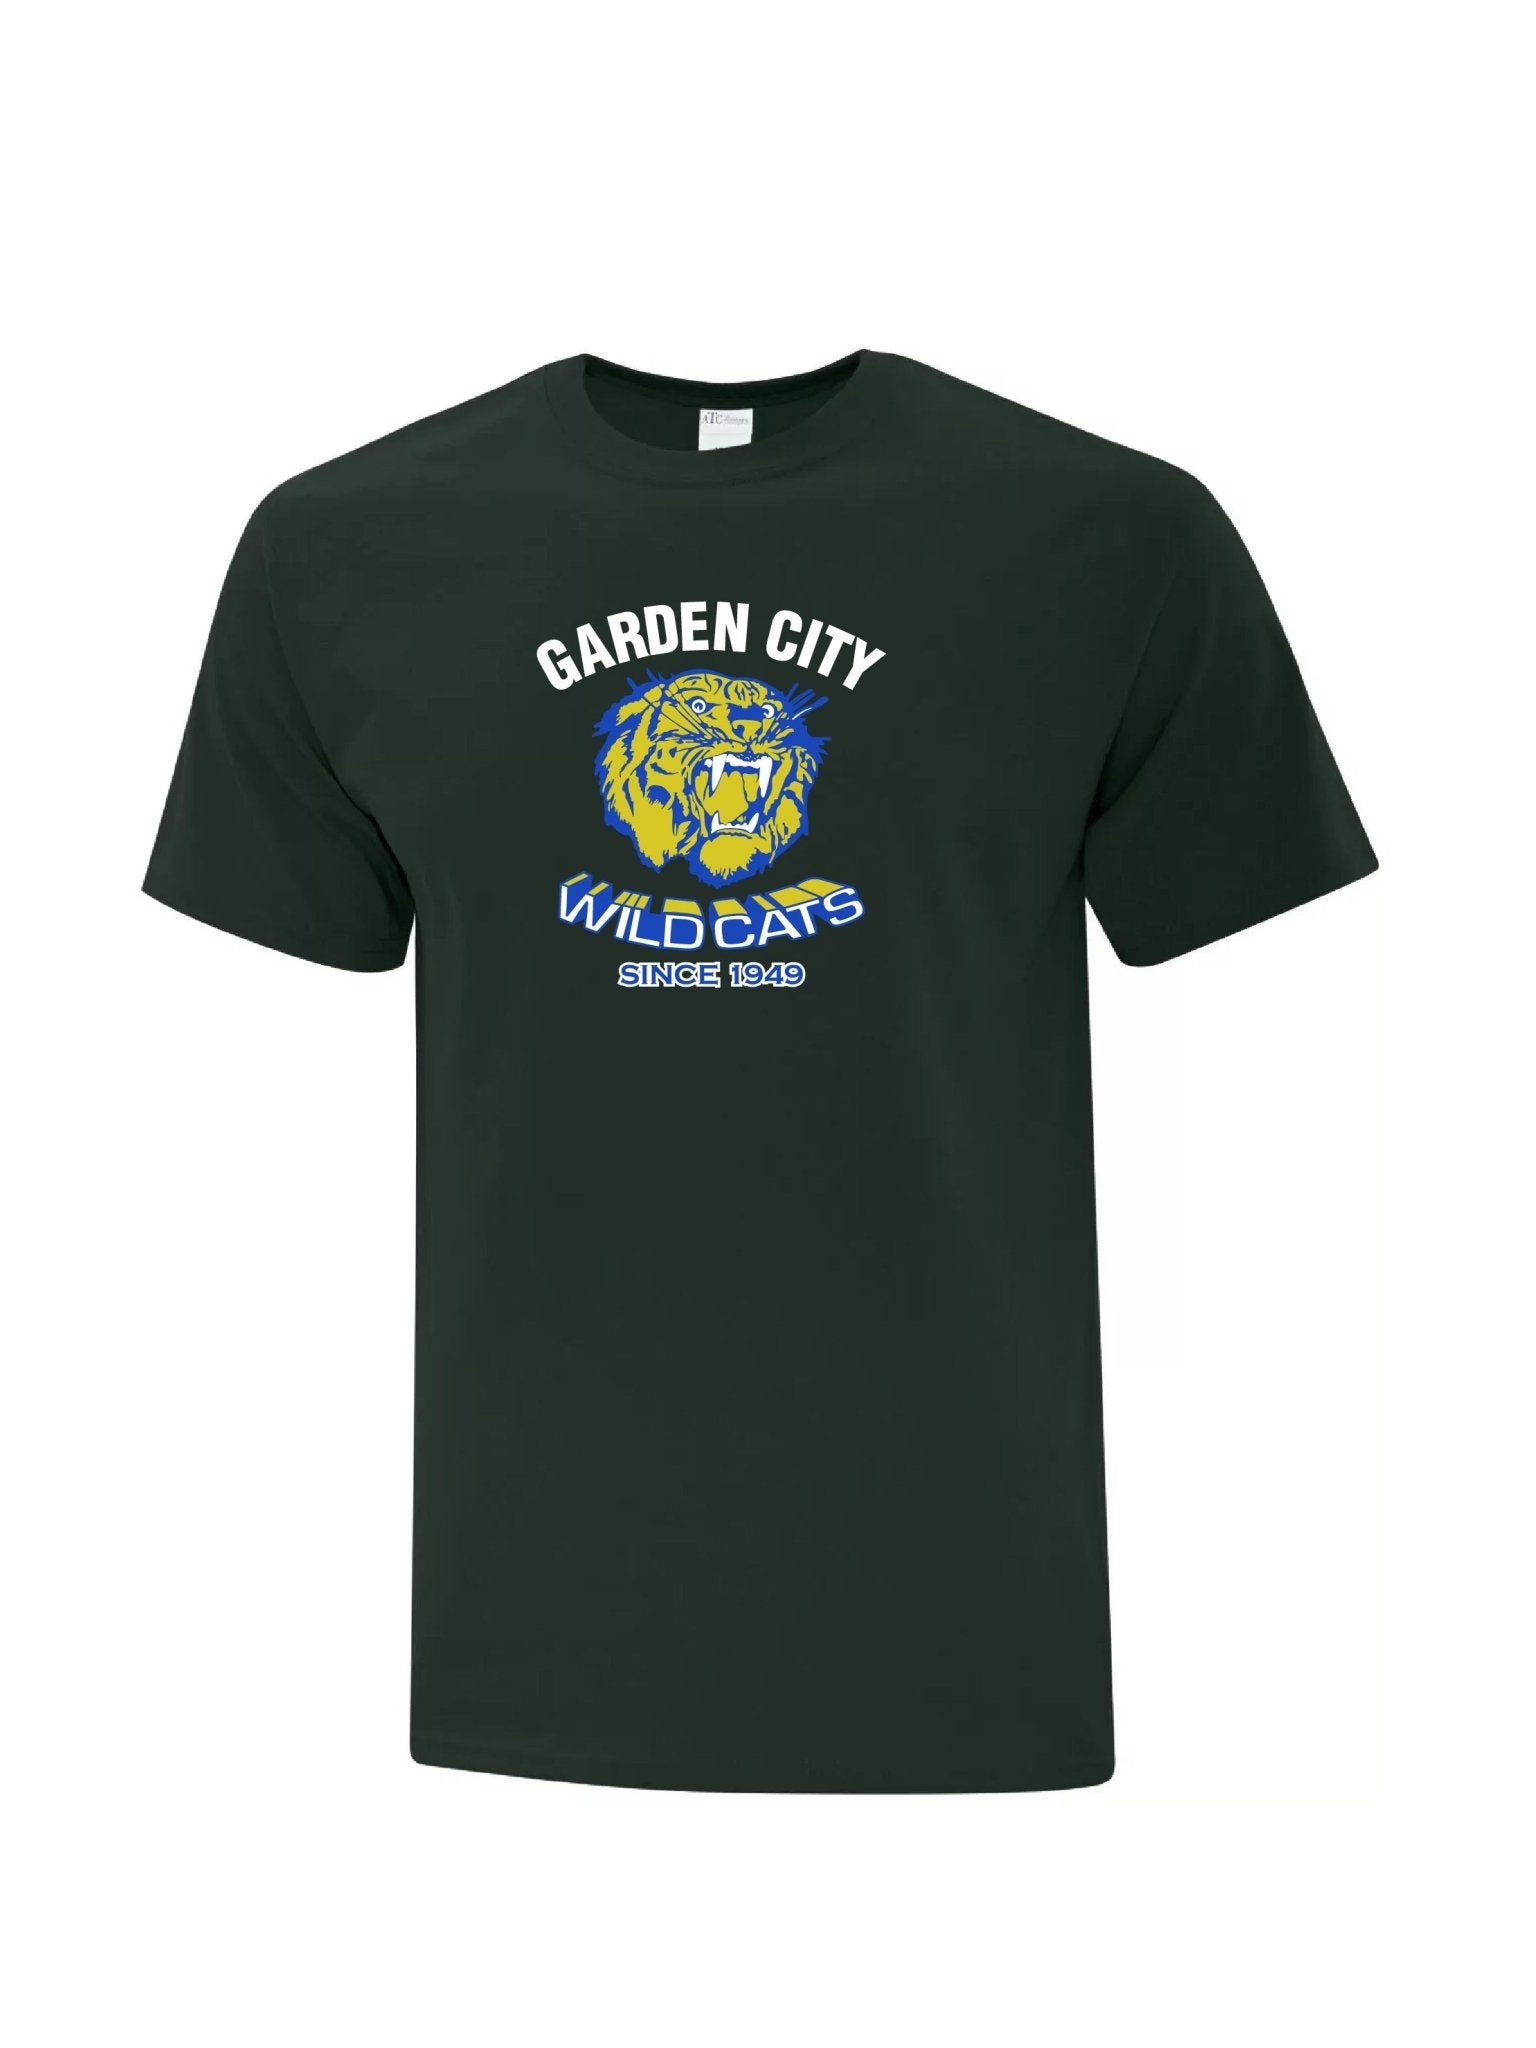 Adult Garden City Wildcats Since 1949 T-shirt - Oddball Workshop